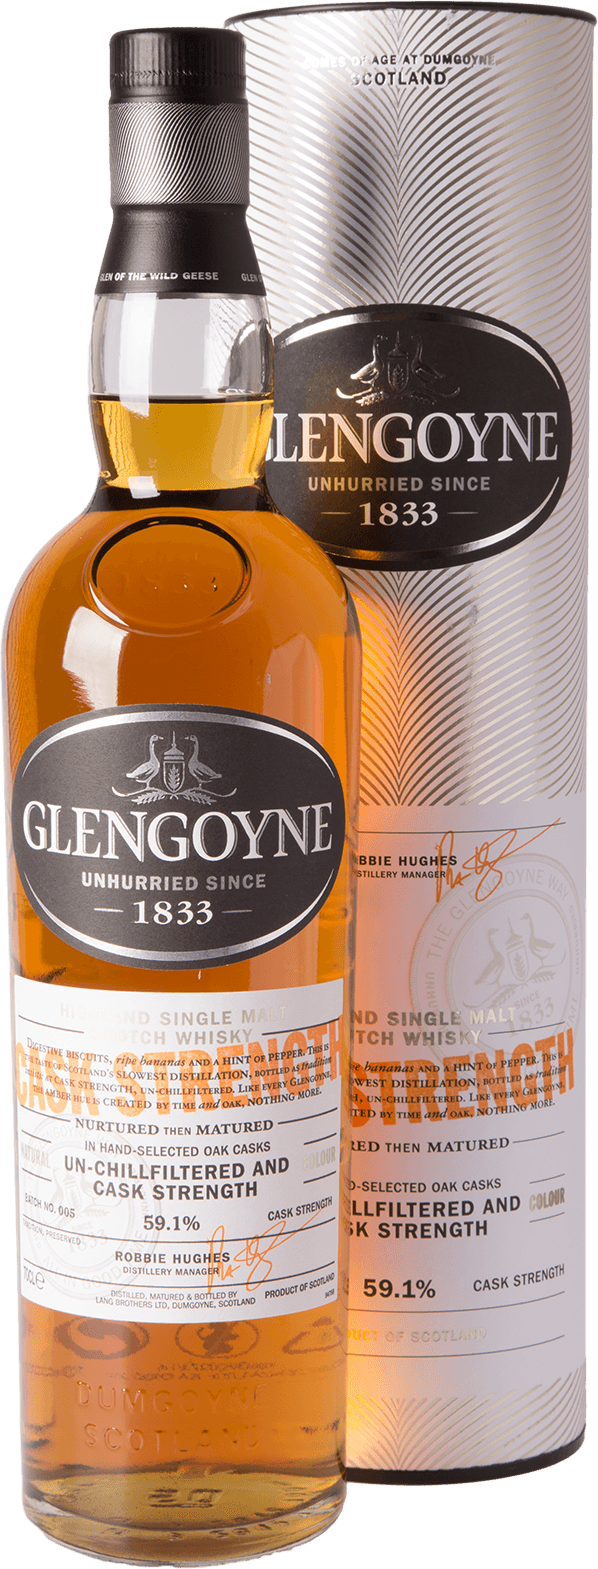 glengoyne-cask-strength-whisky-batch-no-005-591-prozent-070-liter-shop